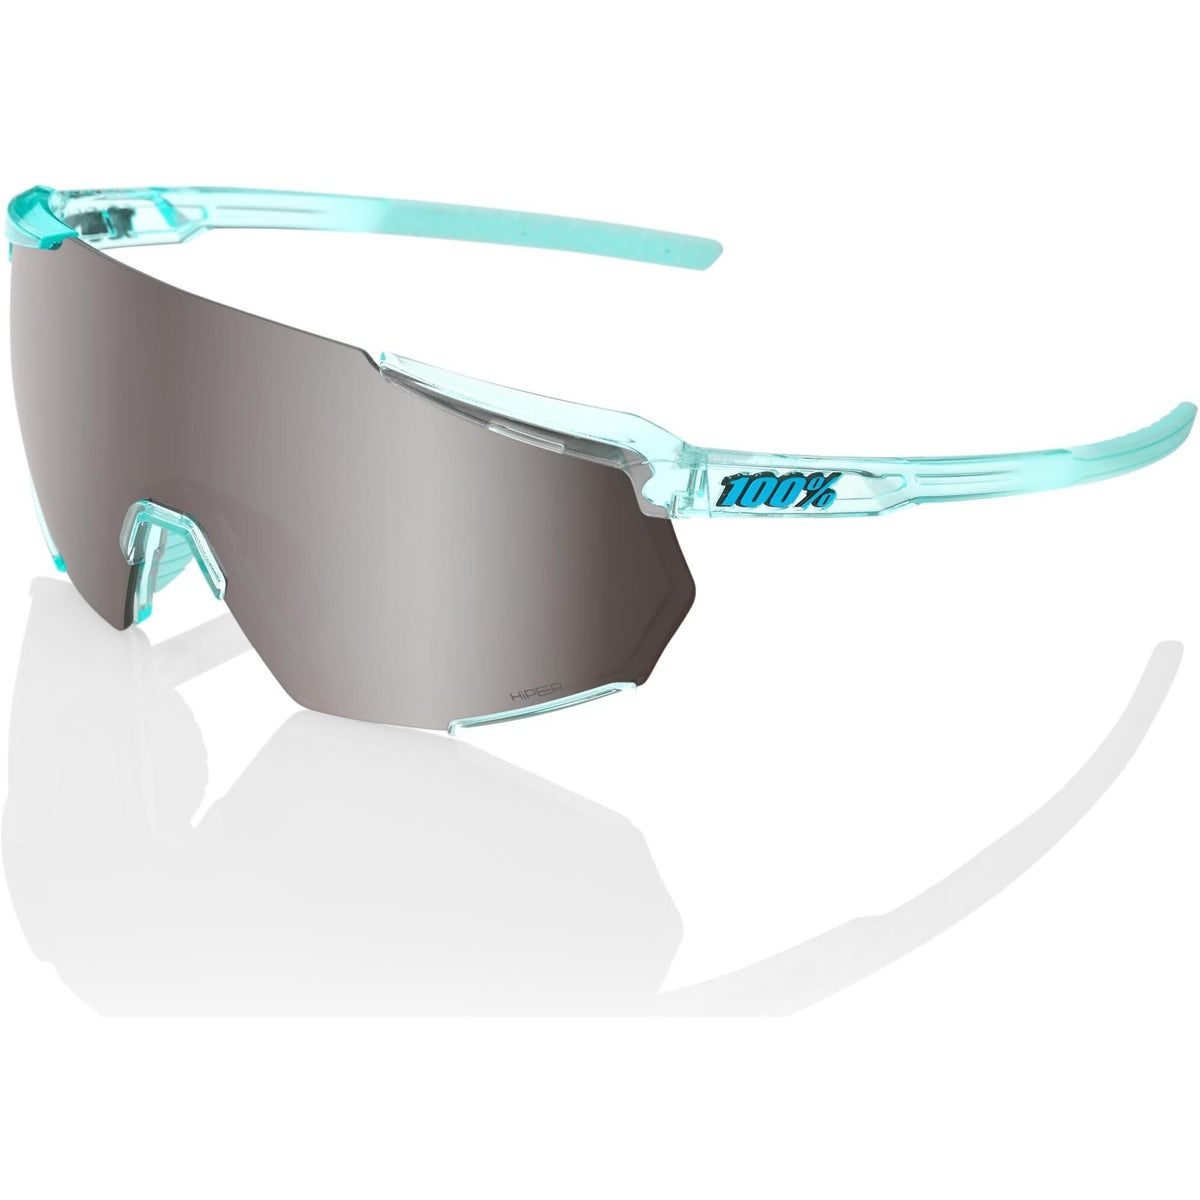 100% Racetrap 3.0 Sunglasses